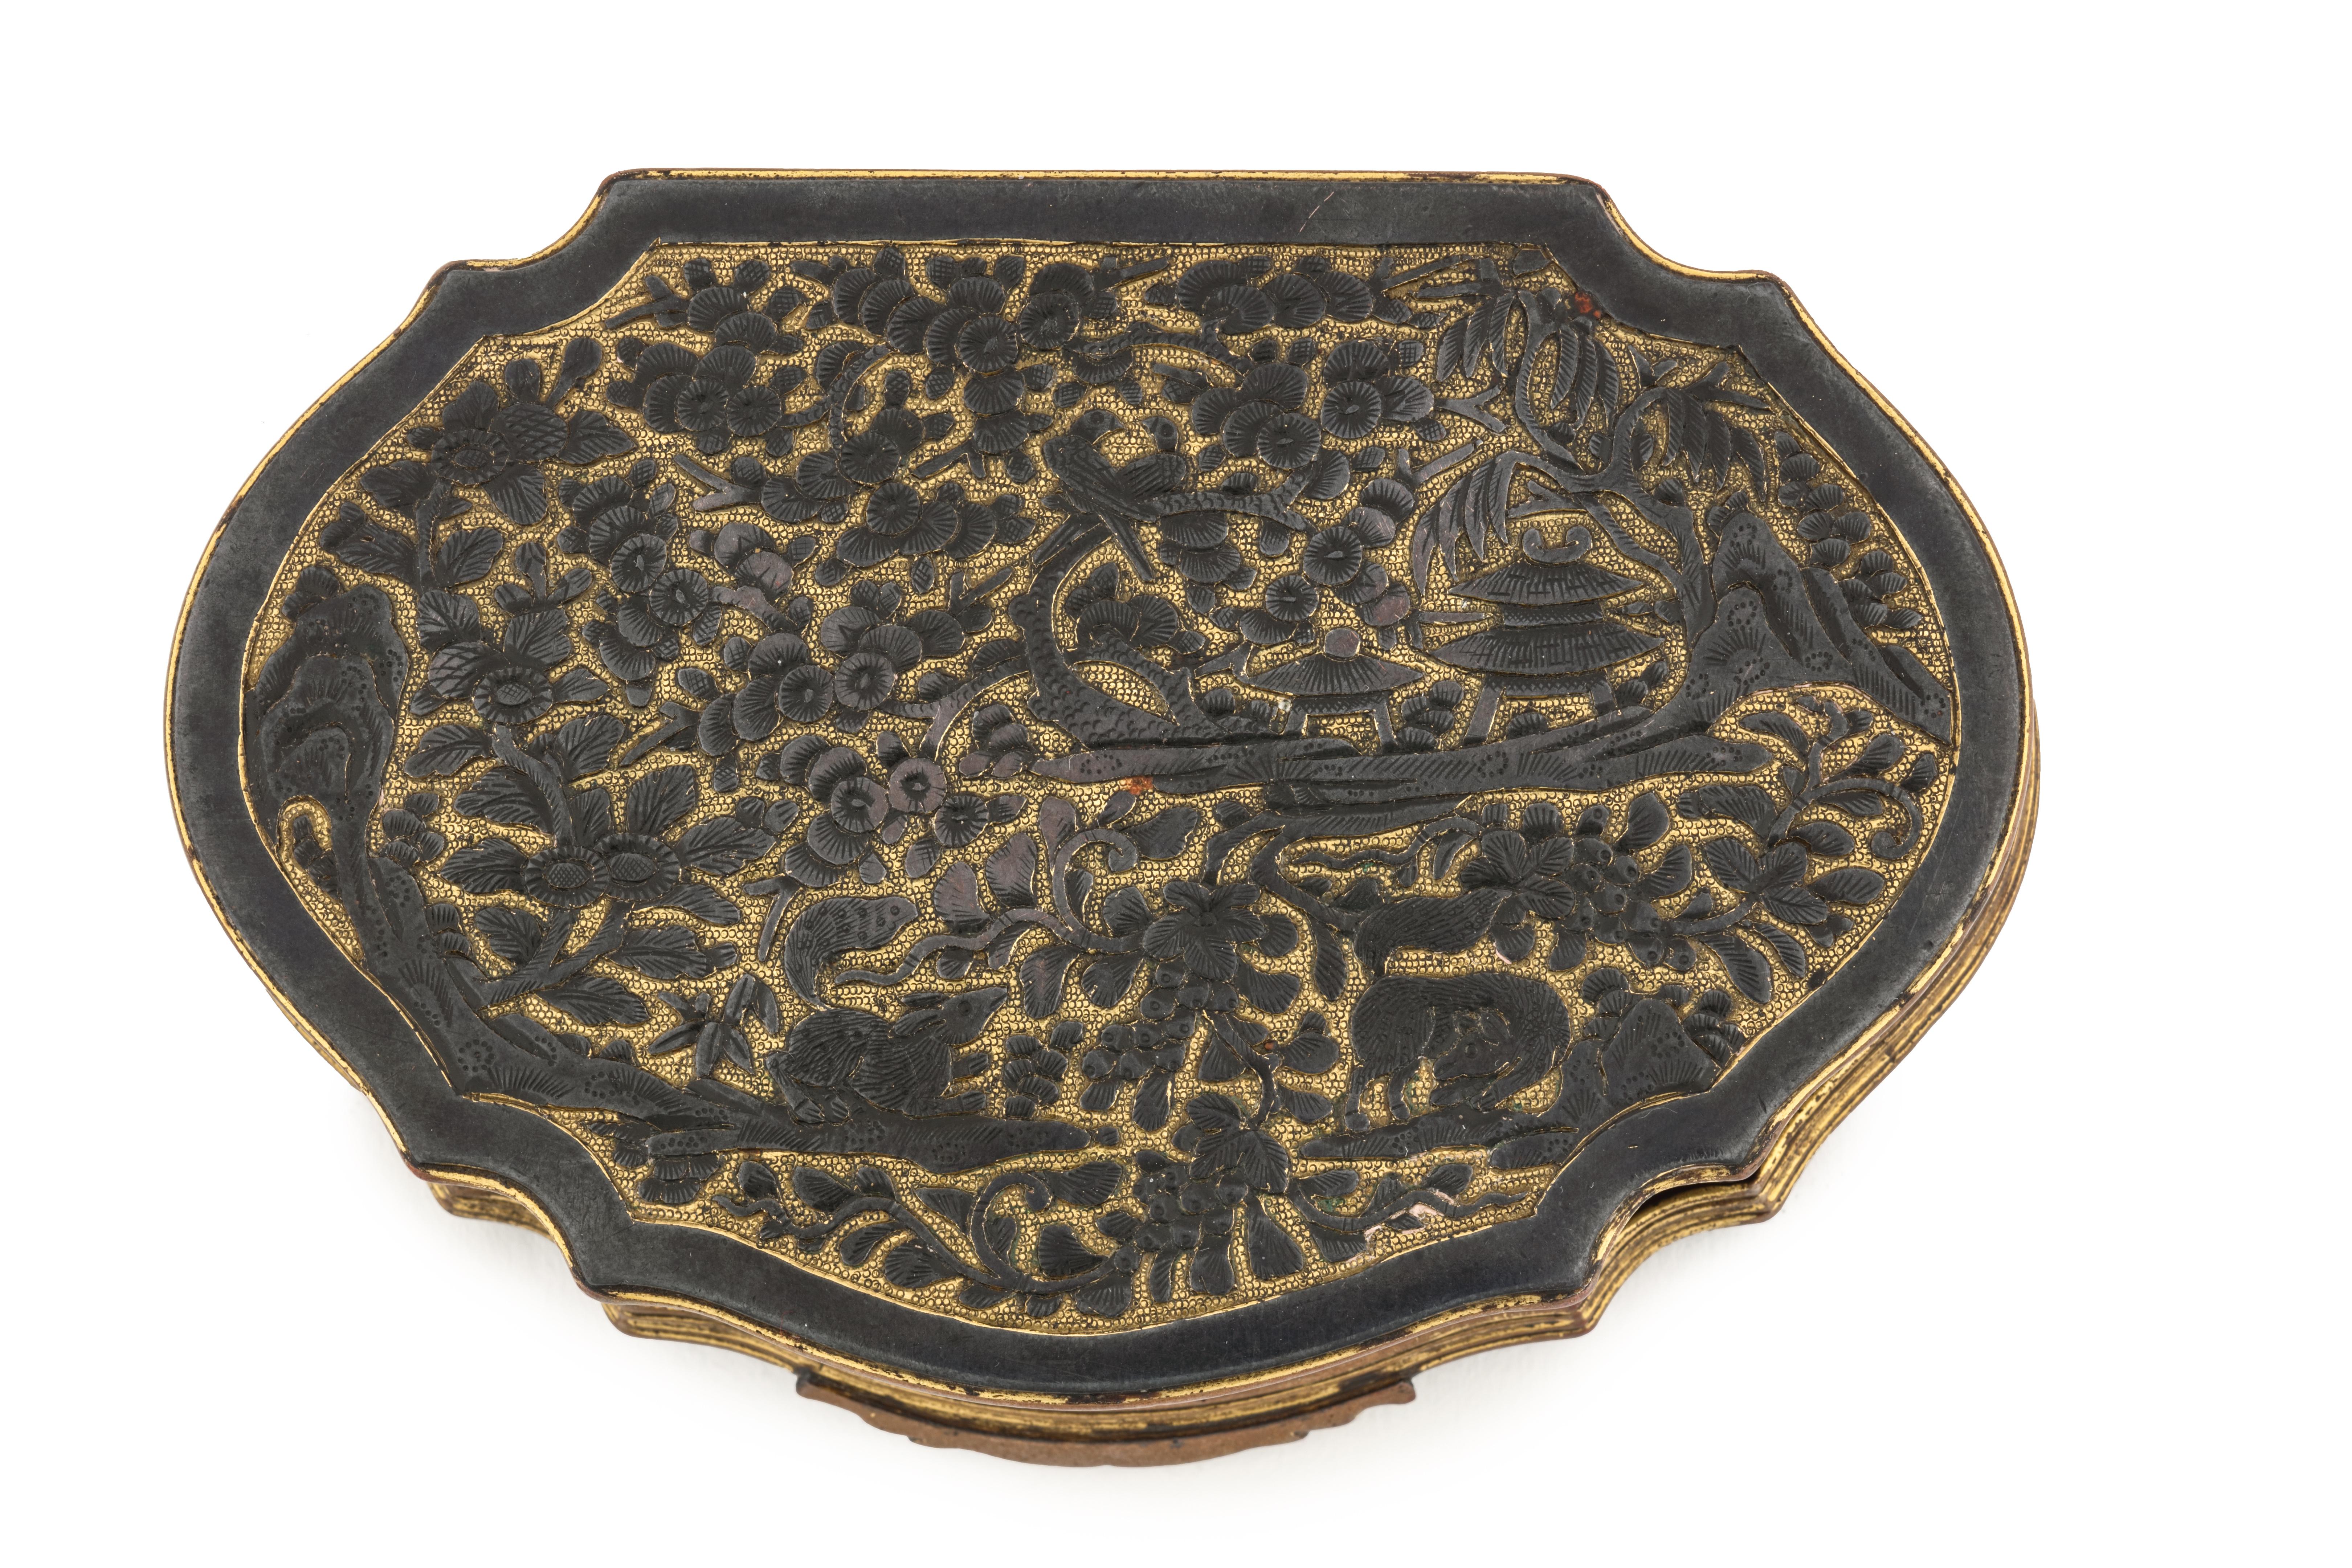 Eine erotische Tabak- oder Schnupftabakdose im Shakudo-Stil in Ruyi-Form, mit Reliefdekor und versilberten Figuren

Möglicherweise Jakarta (Batavia), erste Hälfte 18. Jahrhundert

Maße: H. 2,2 x L. 12,1 x B. 8 cm

Diese Schachtel ist ganz im